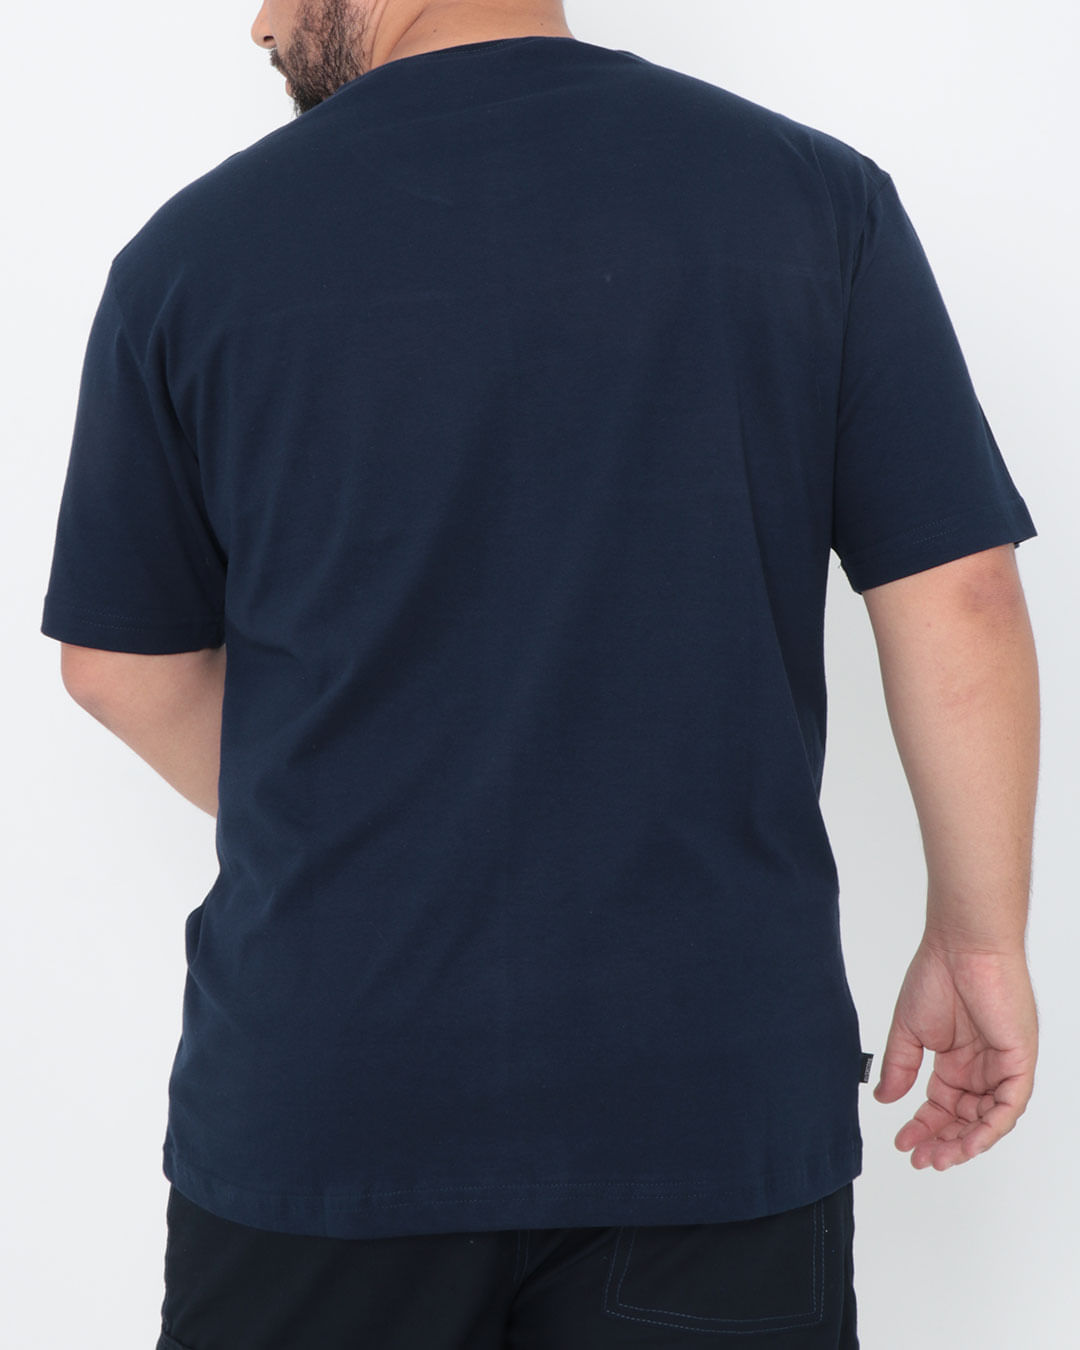 Camiseta-Plus-Size-Manga-Curta-Estampada-Urban-Marinho